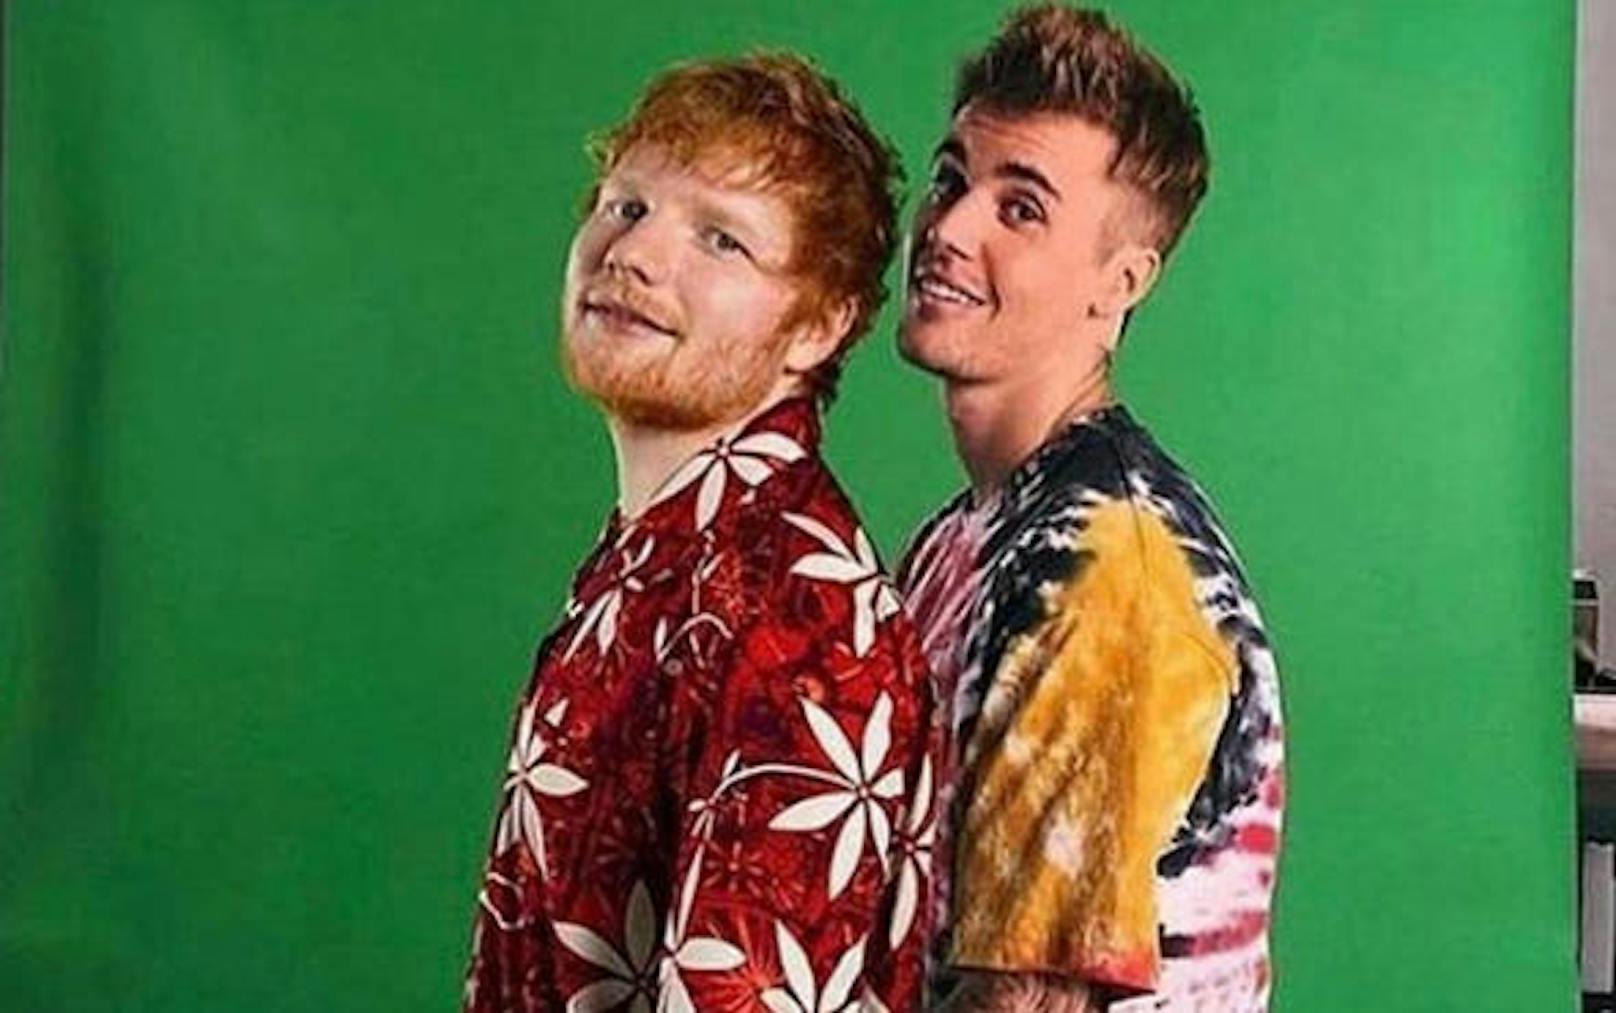 2.5.2019: Ed Sheeran und Justin Bieber arbeiten offenbar an einem neuen Song. Die beiden teilten auf Instagram mehrere Fotos von ihrem gemeinsamen Shooting.